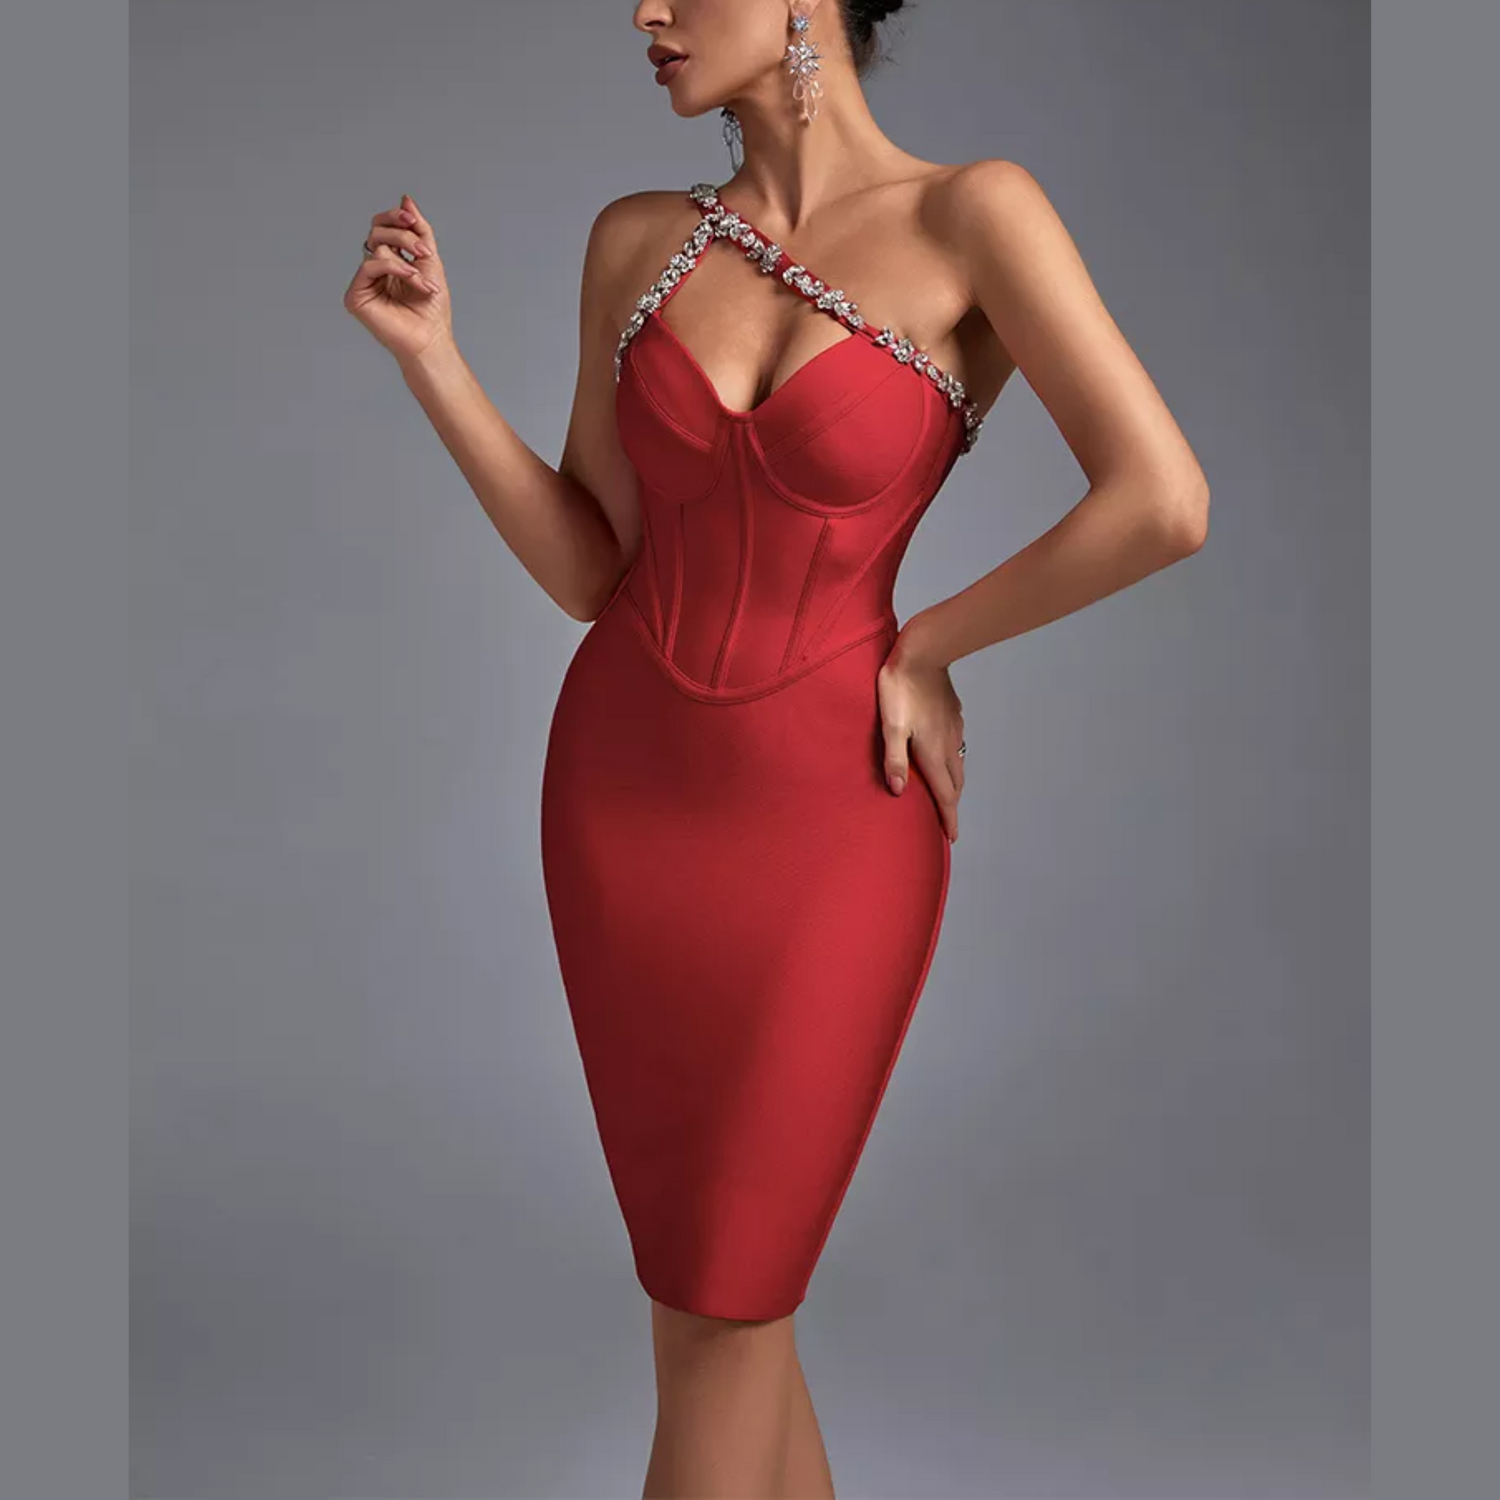 Anika - Red Embellished One Shoulder Mini Bandage Dress - Model Mannequin